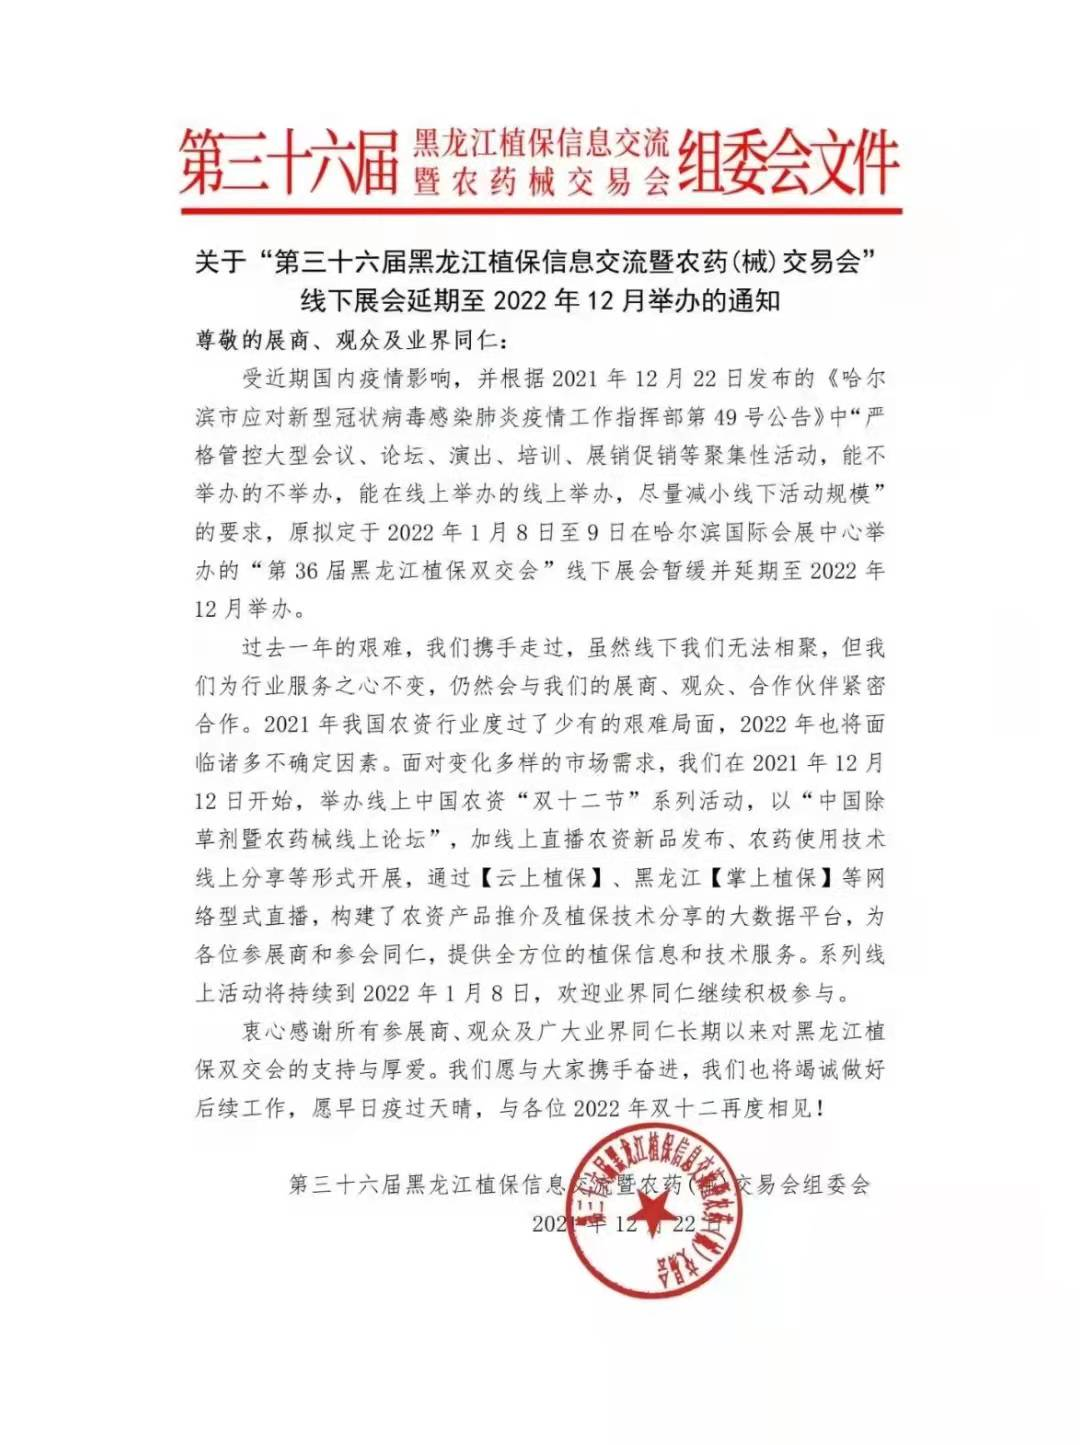 黑龙江省植保会延期通知(图1)